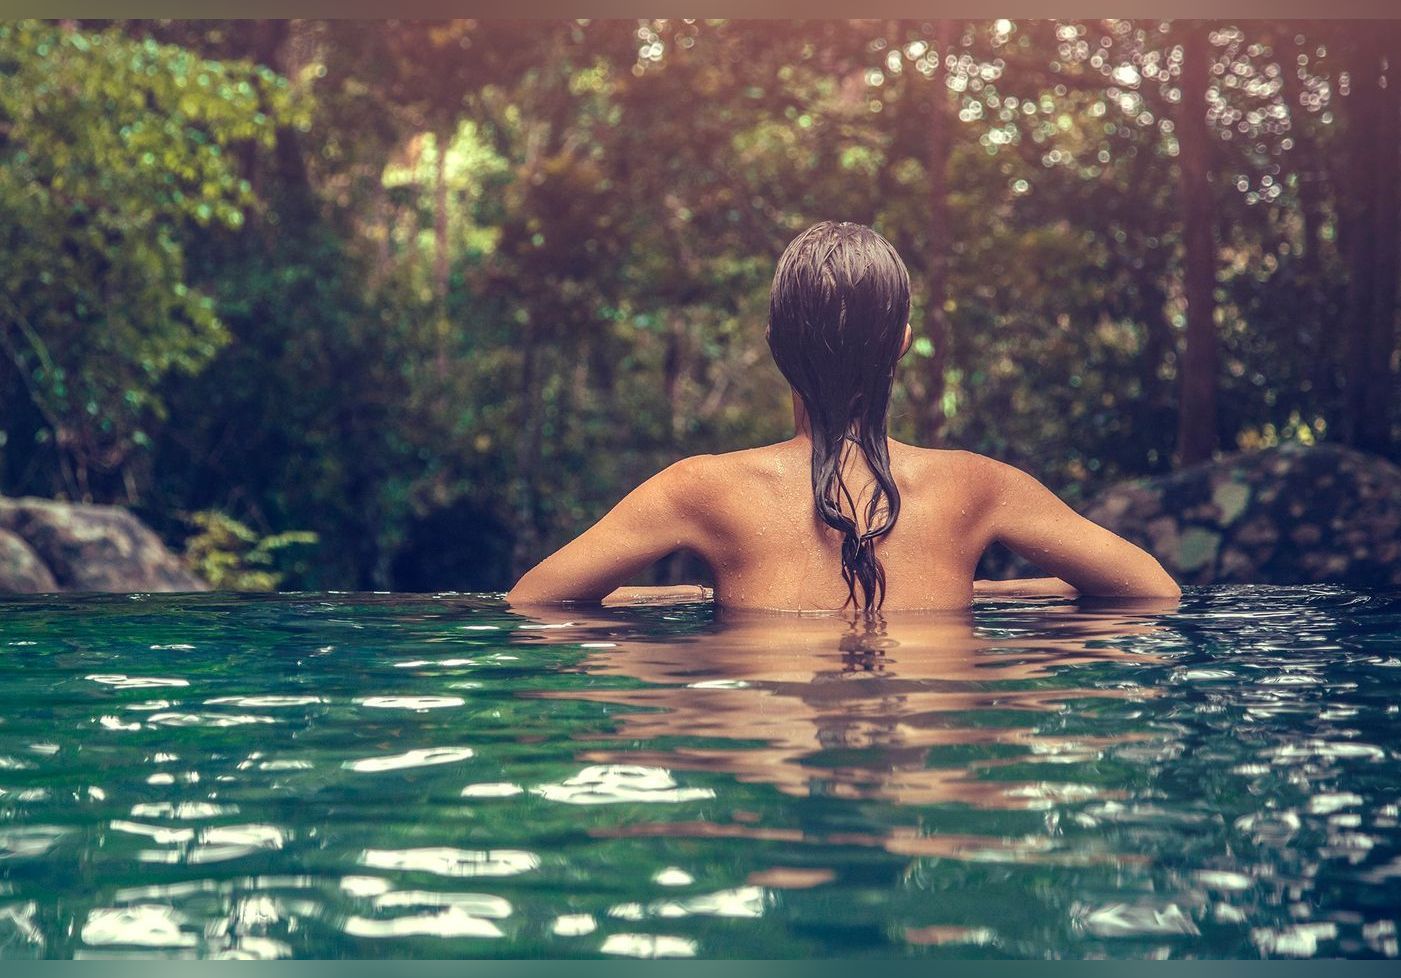 Les Français rêvent de vacances naturistes : 3 adresses tranquilles pour s’y essayer en pleine nature